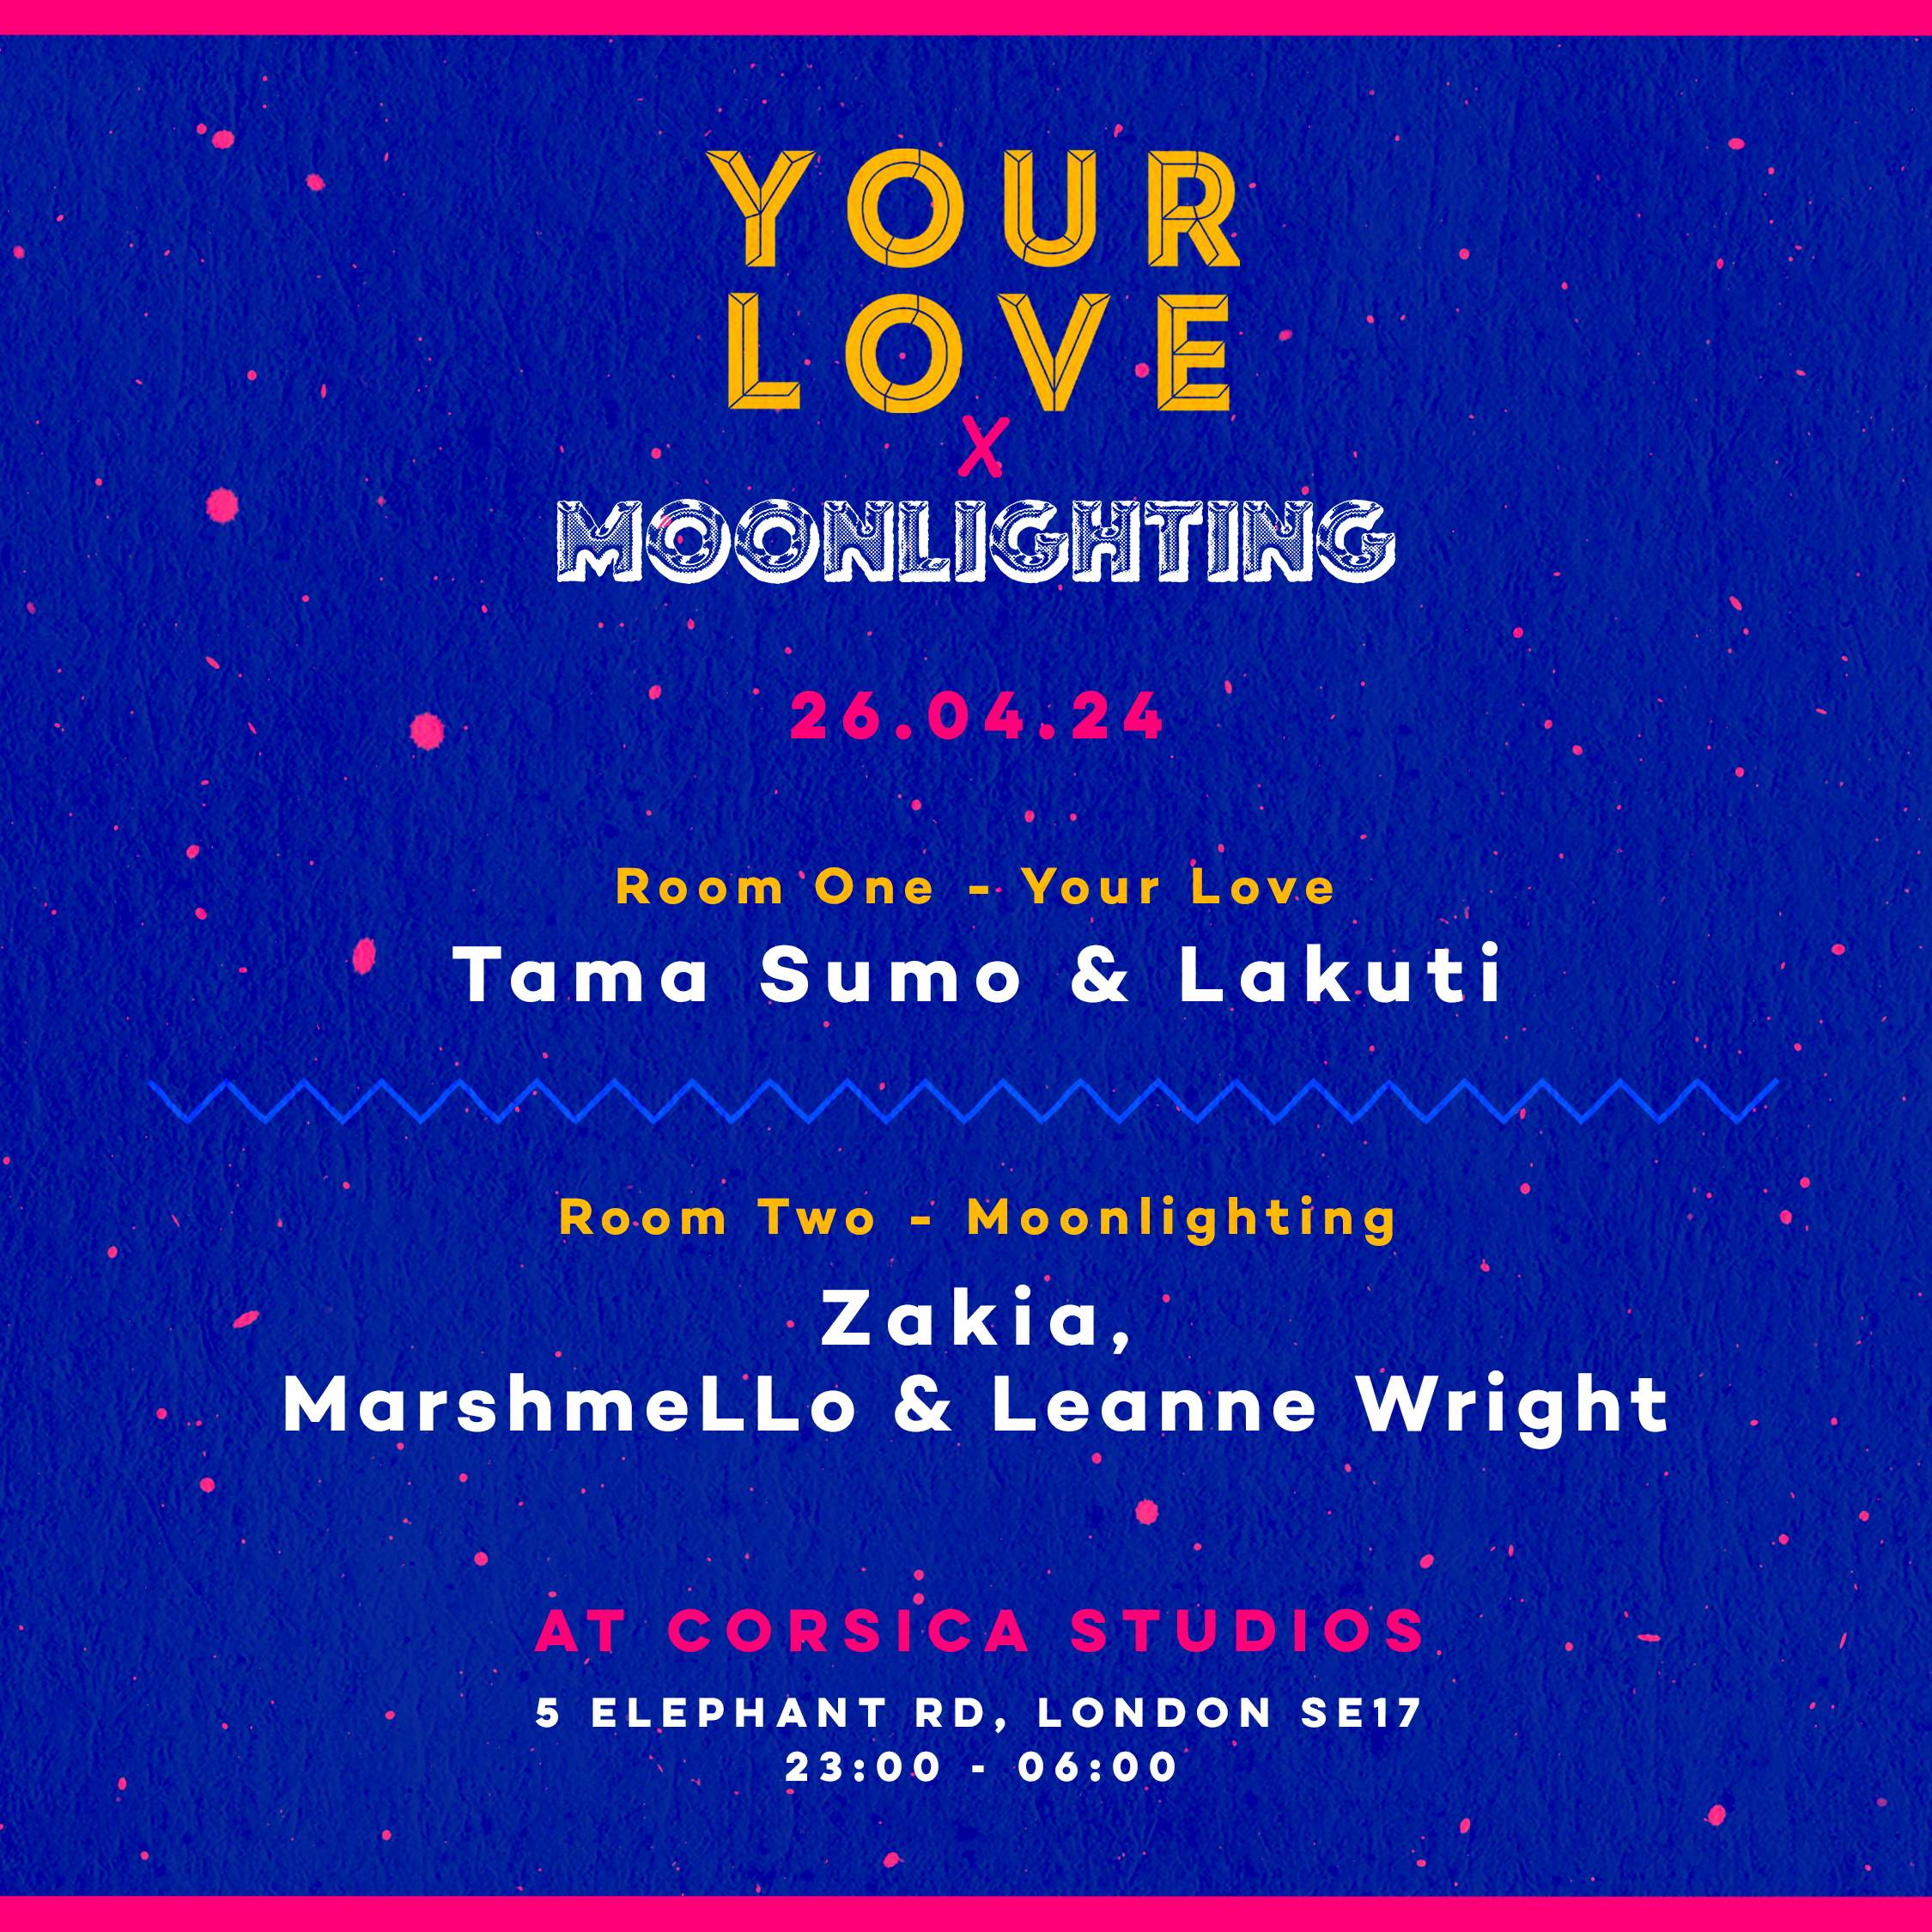 Your Love x Moonlighting - フライヤー裏